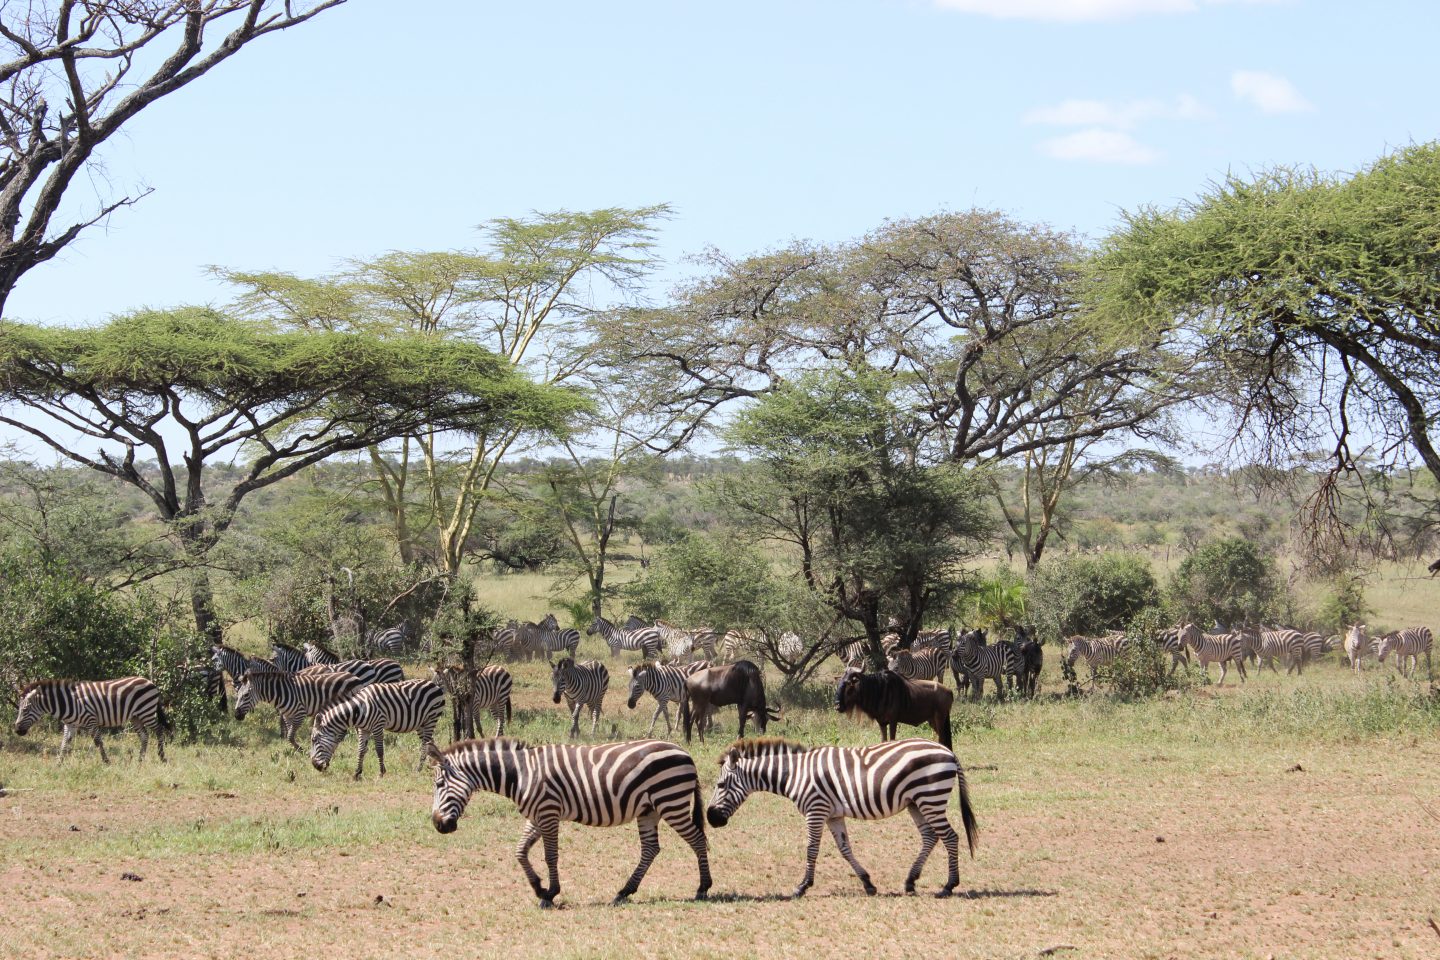 Full Game Drive at Serengeti